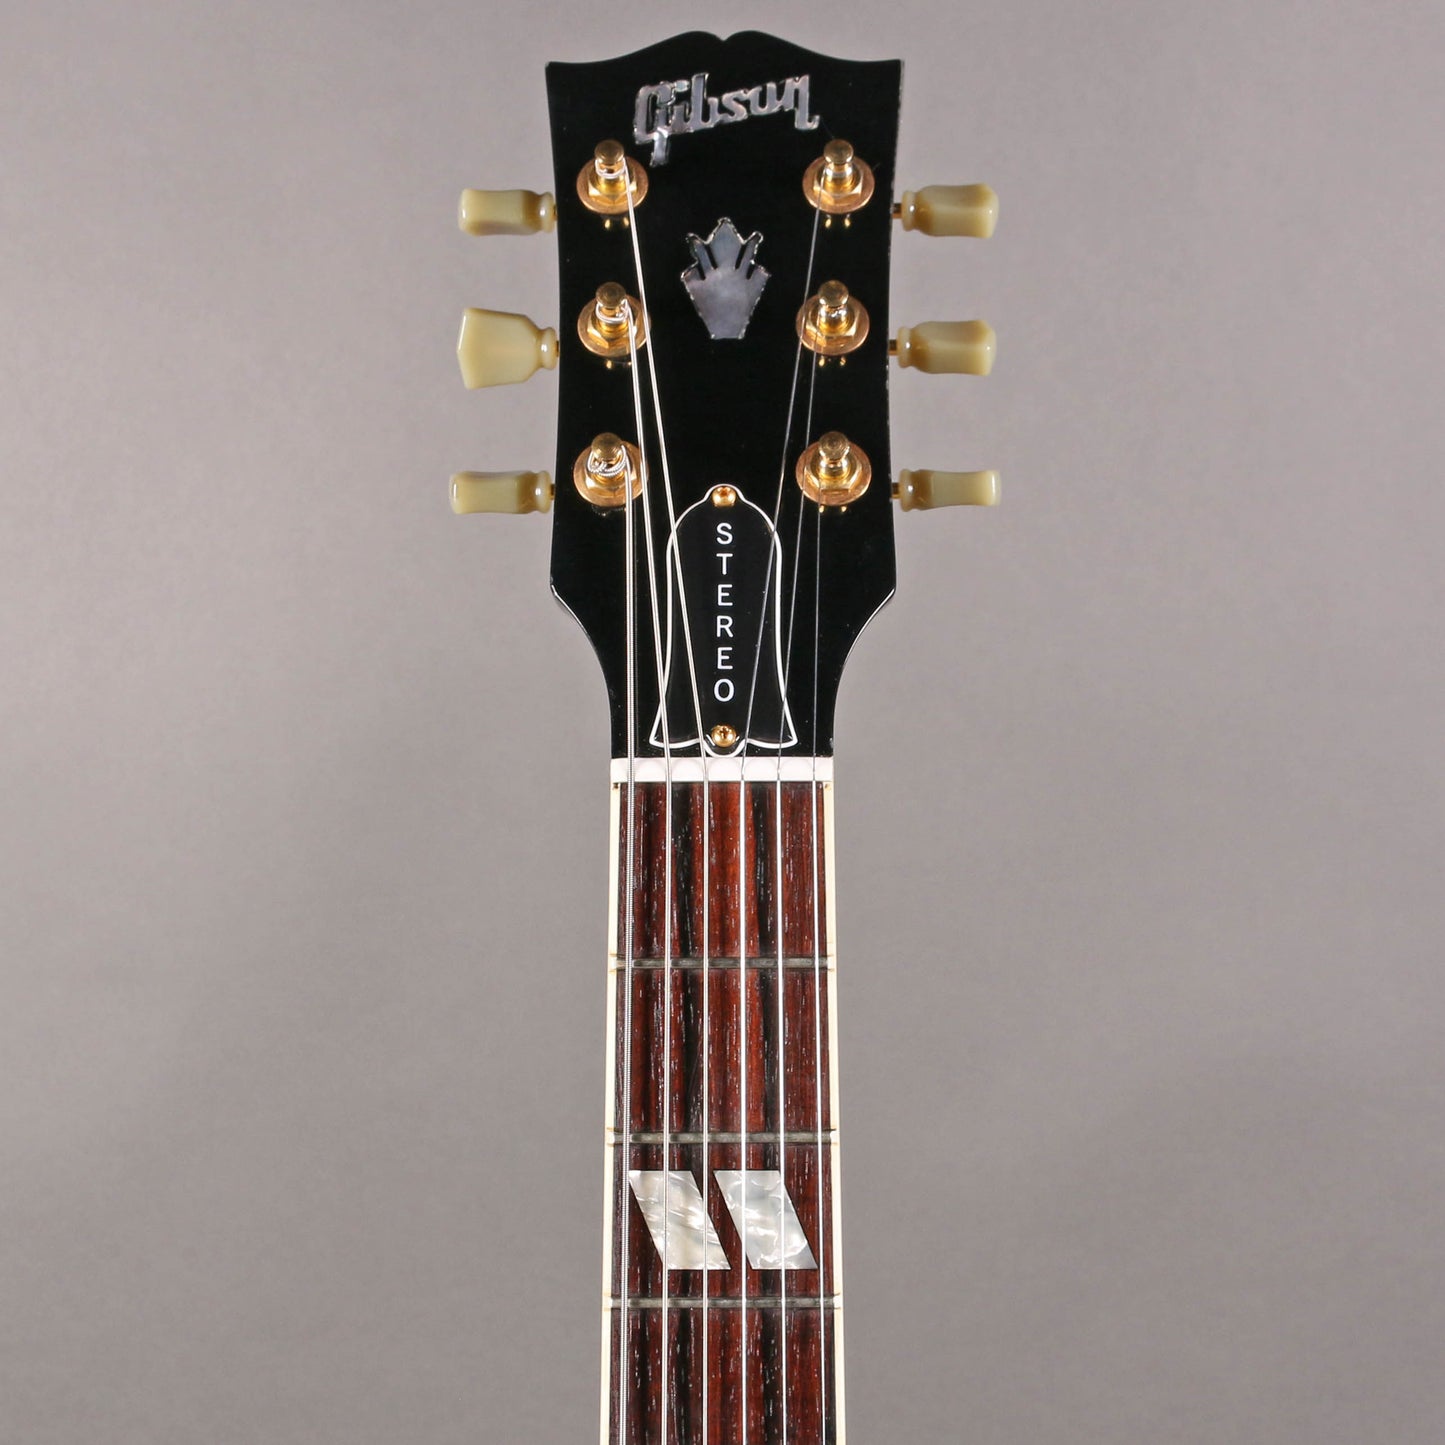 2007 Gibson ES-345